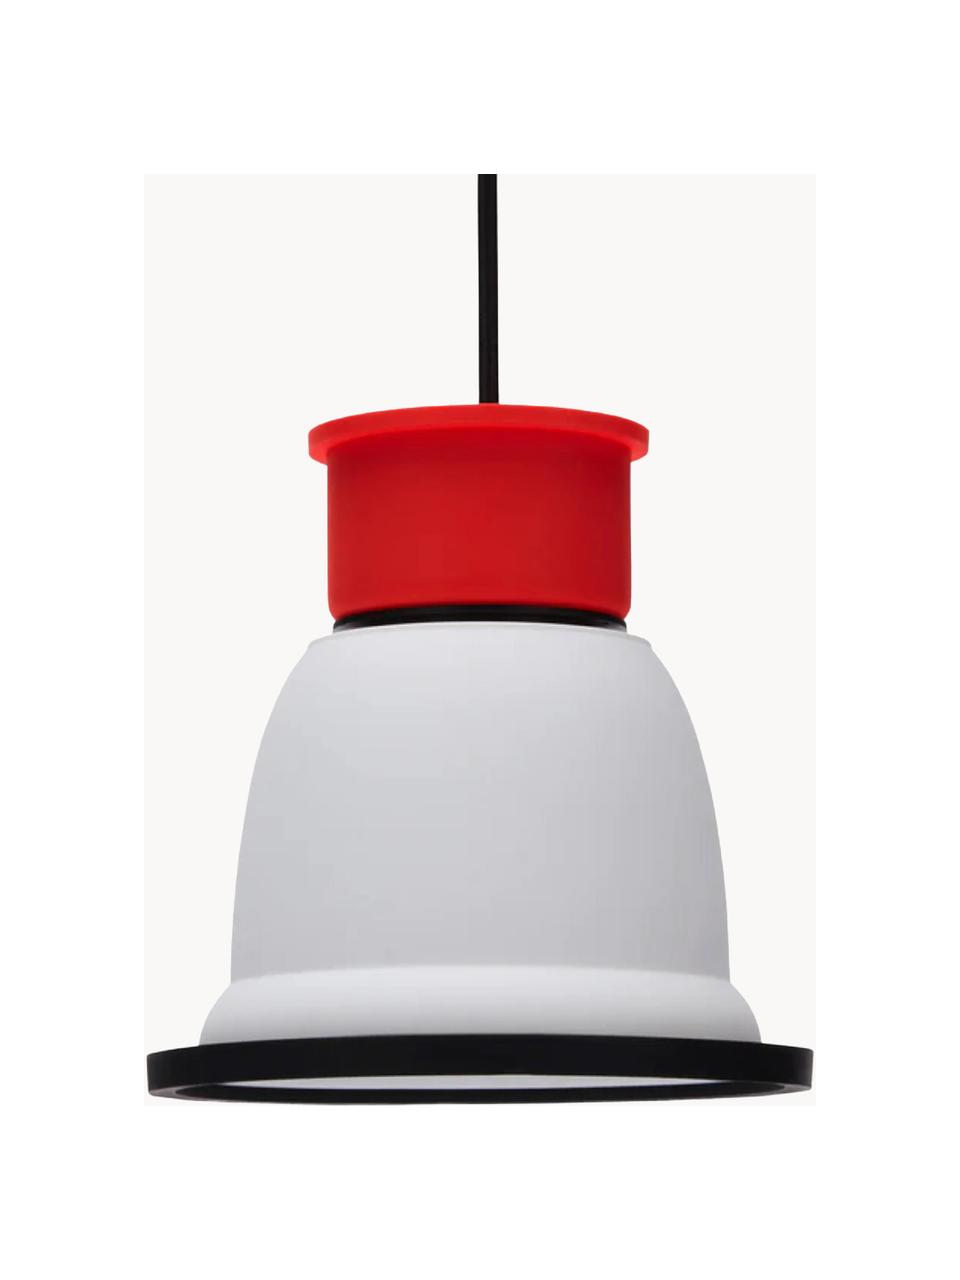 Malé závěsné svítidlo CL1, Bílá, červená, černá, Ø 18 cm, V 18 cm